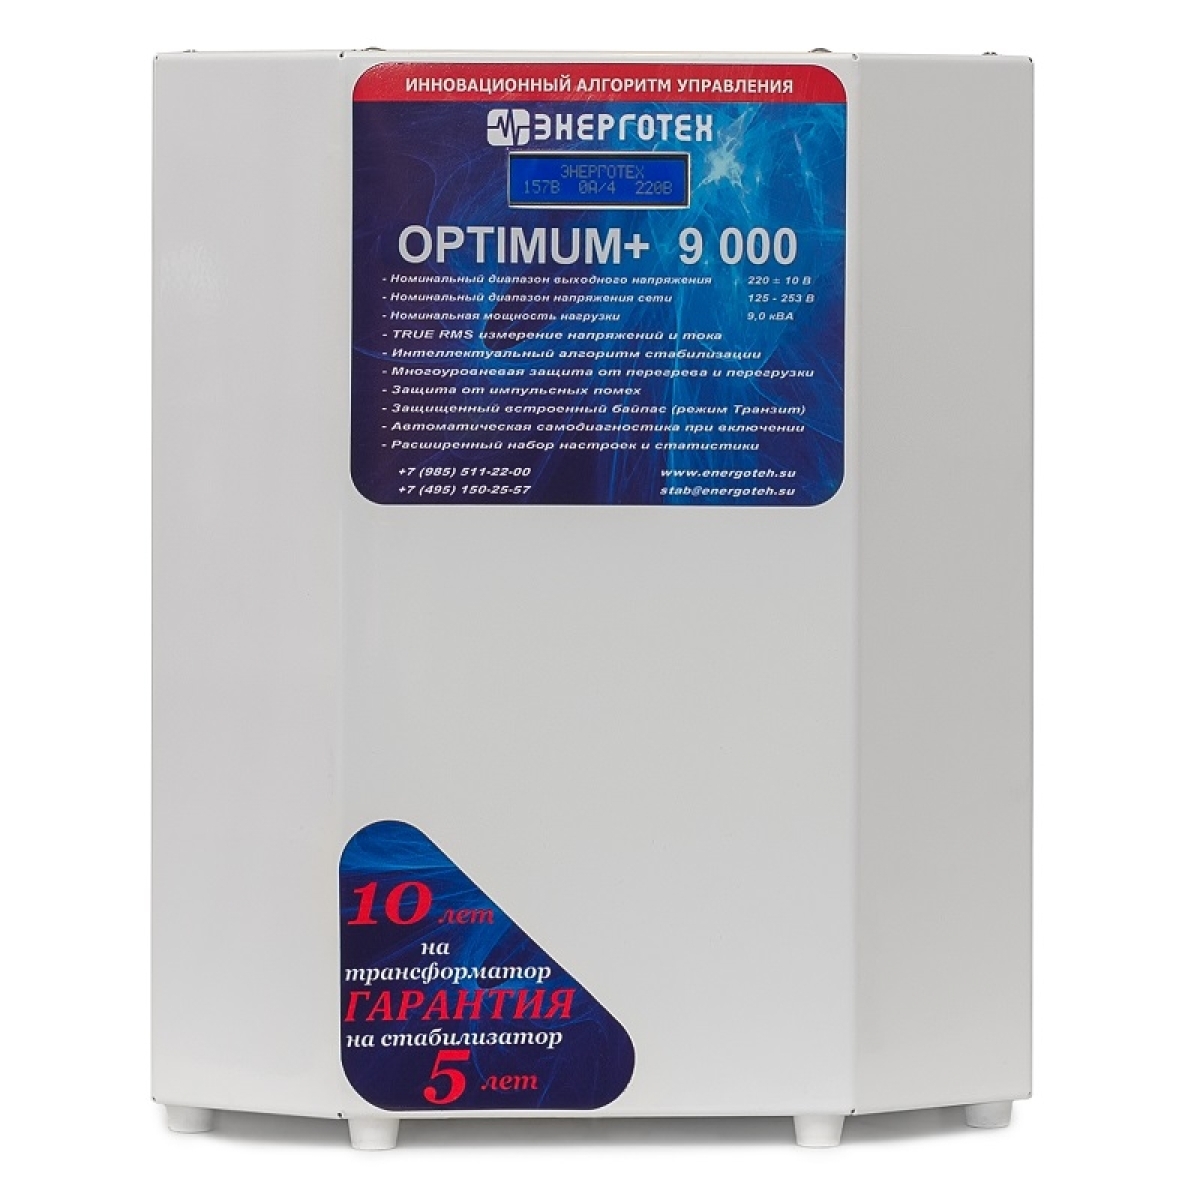 Однофазный стабилизатор Энерготех OPTIMUM+ 9000(HV)